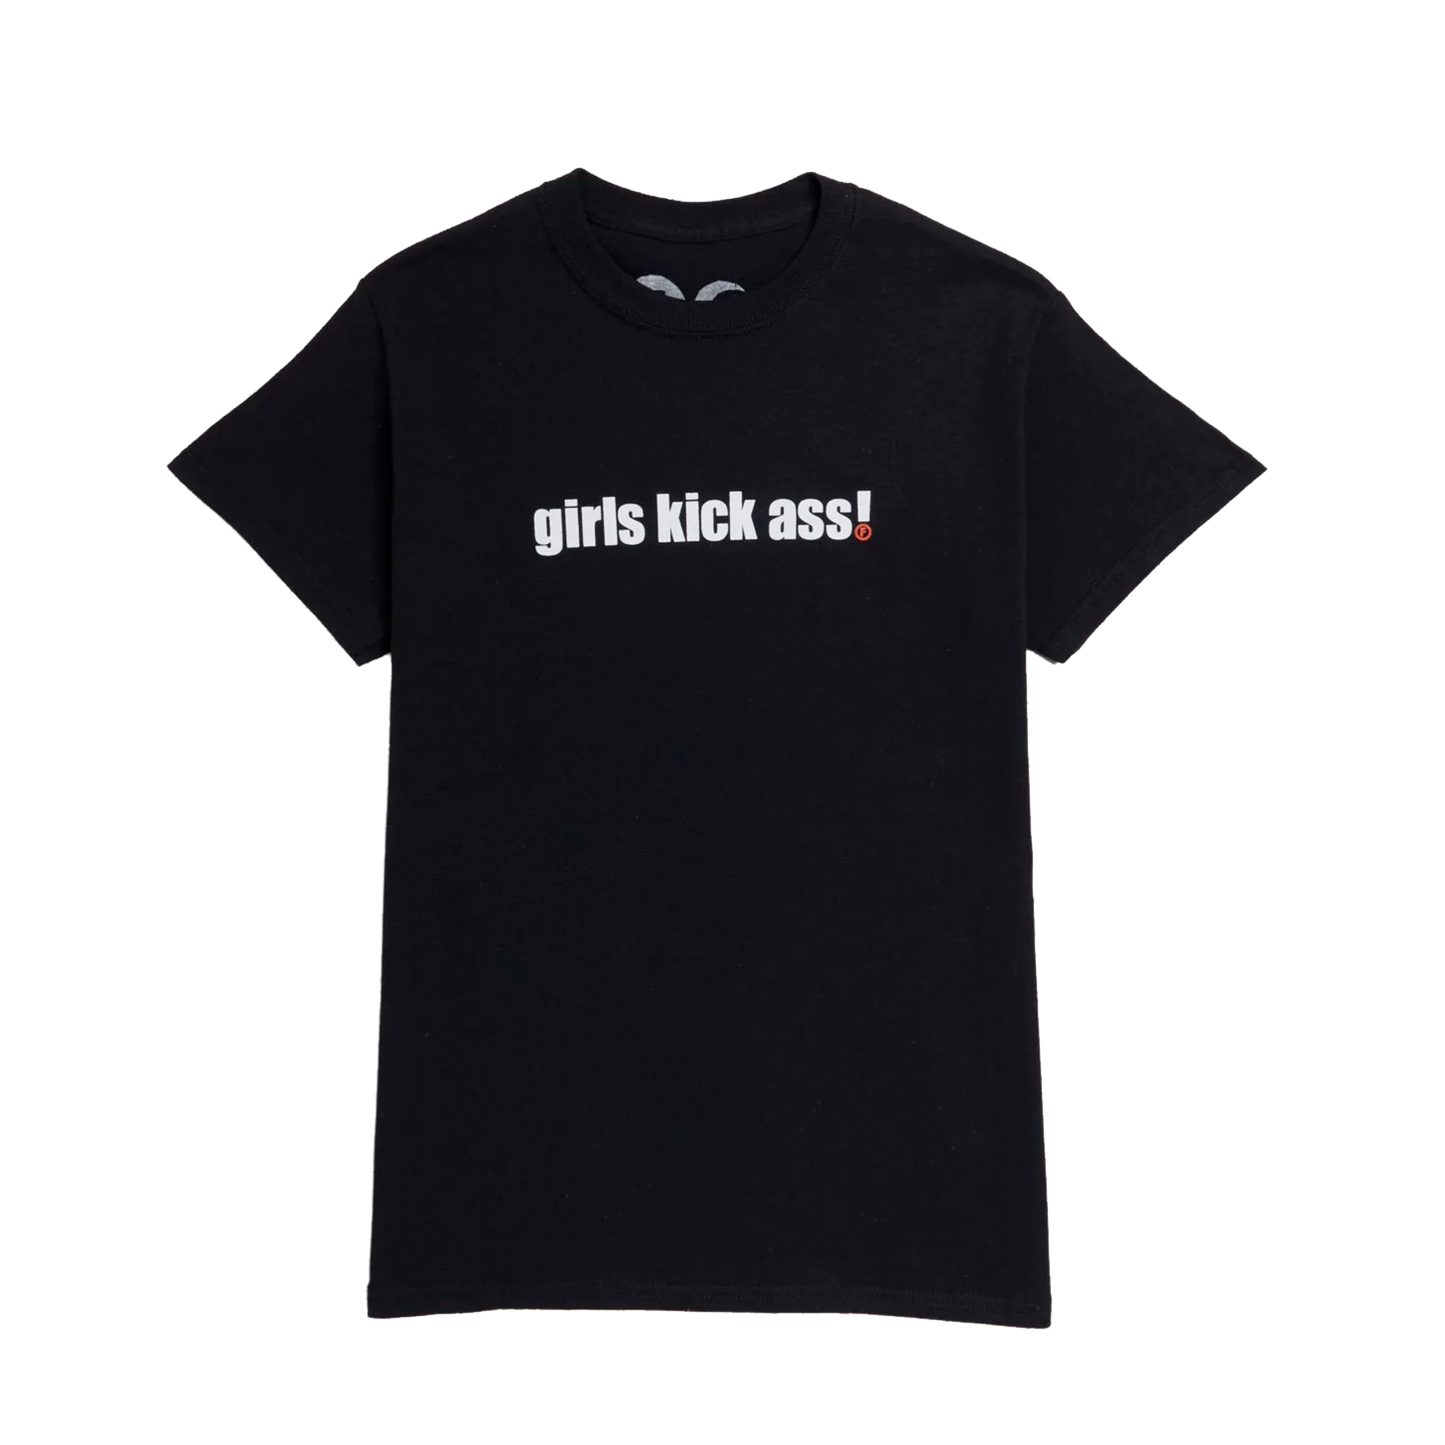 Foundation Girls Kick Ass Tee - Black